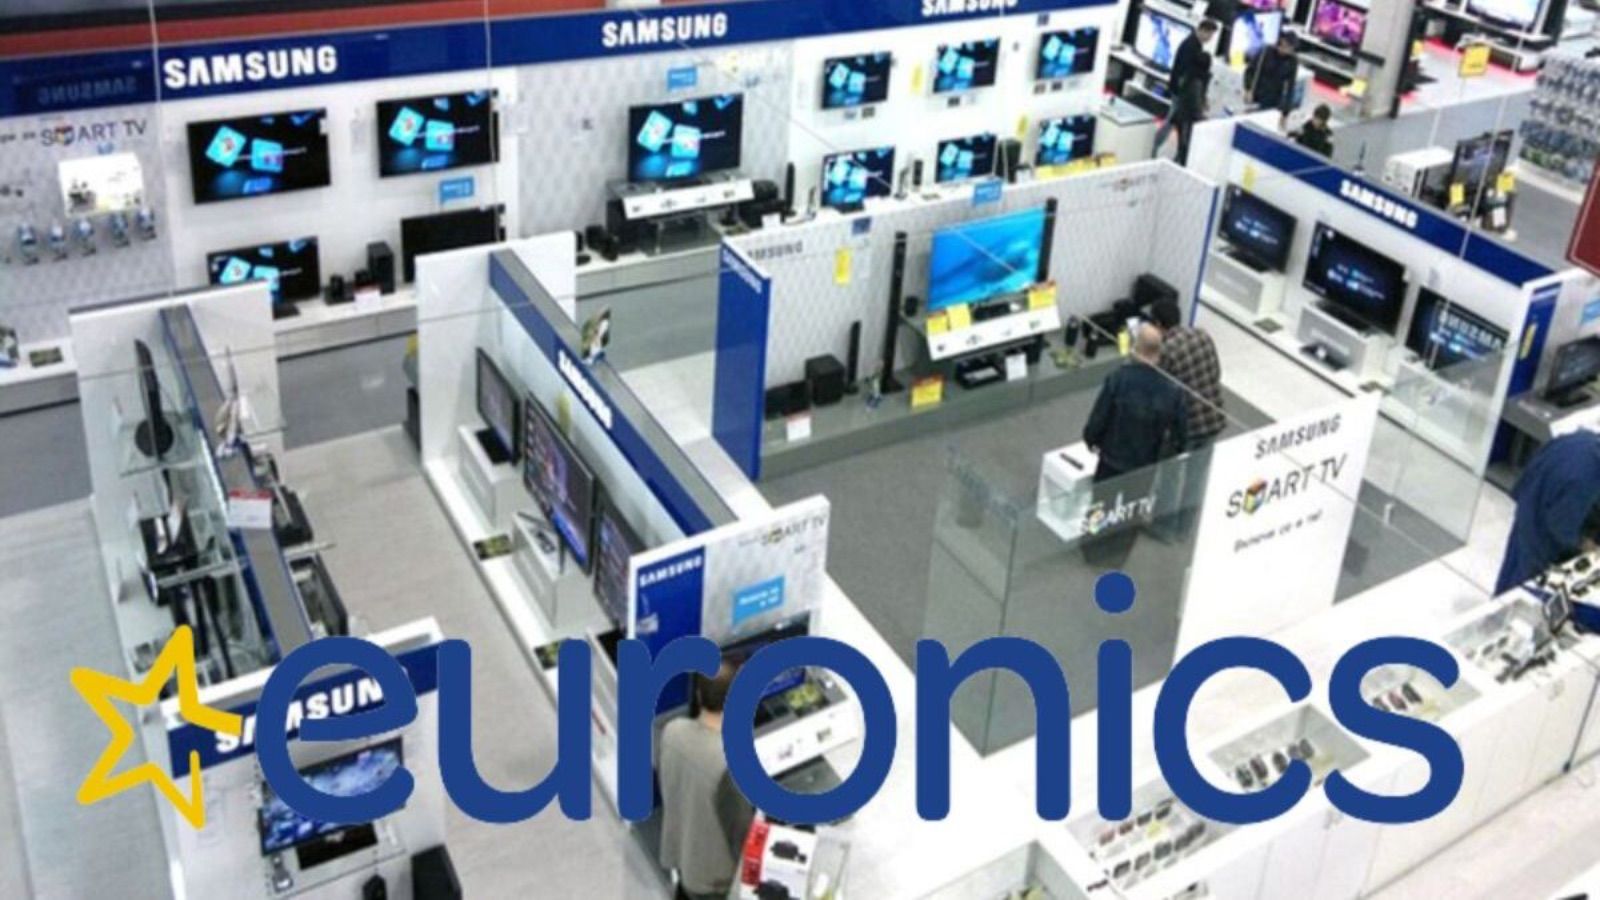 Euronics offre a prezzi SHOCK iPhone 14 e Galaxy S23 ad agosto